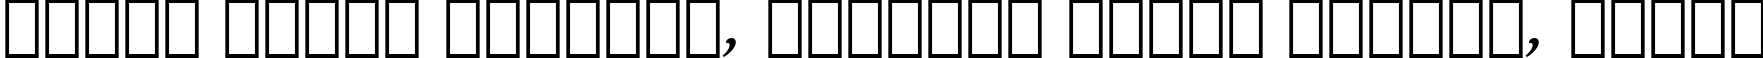 Пример написания шрифтом Bitstream Arrus Bold Italic BT текста на белорусском